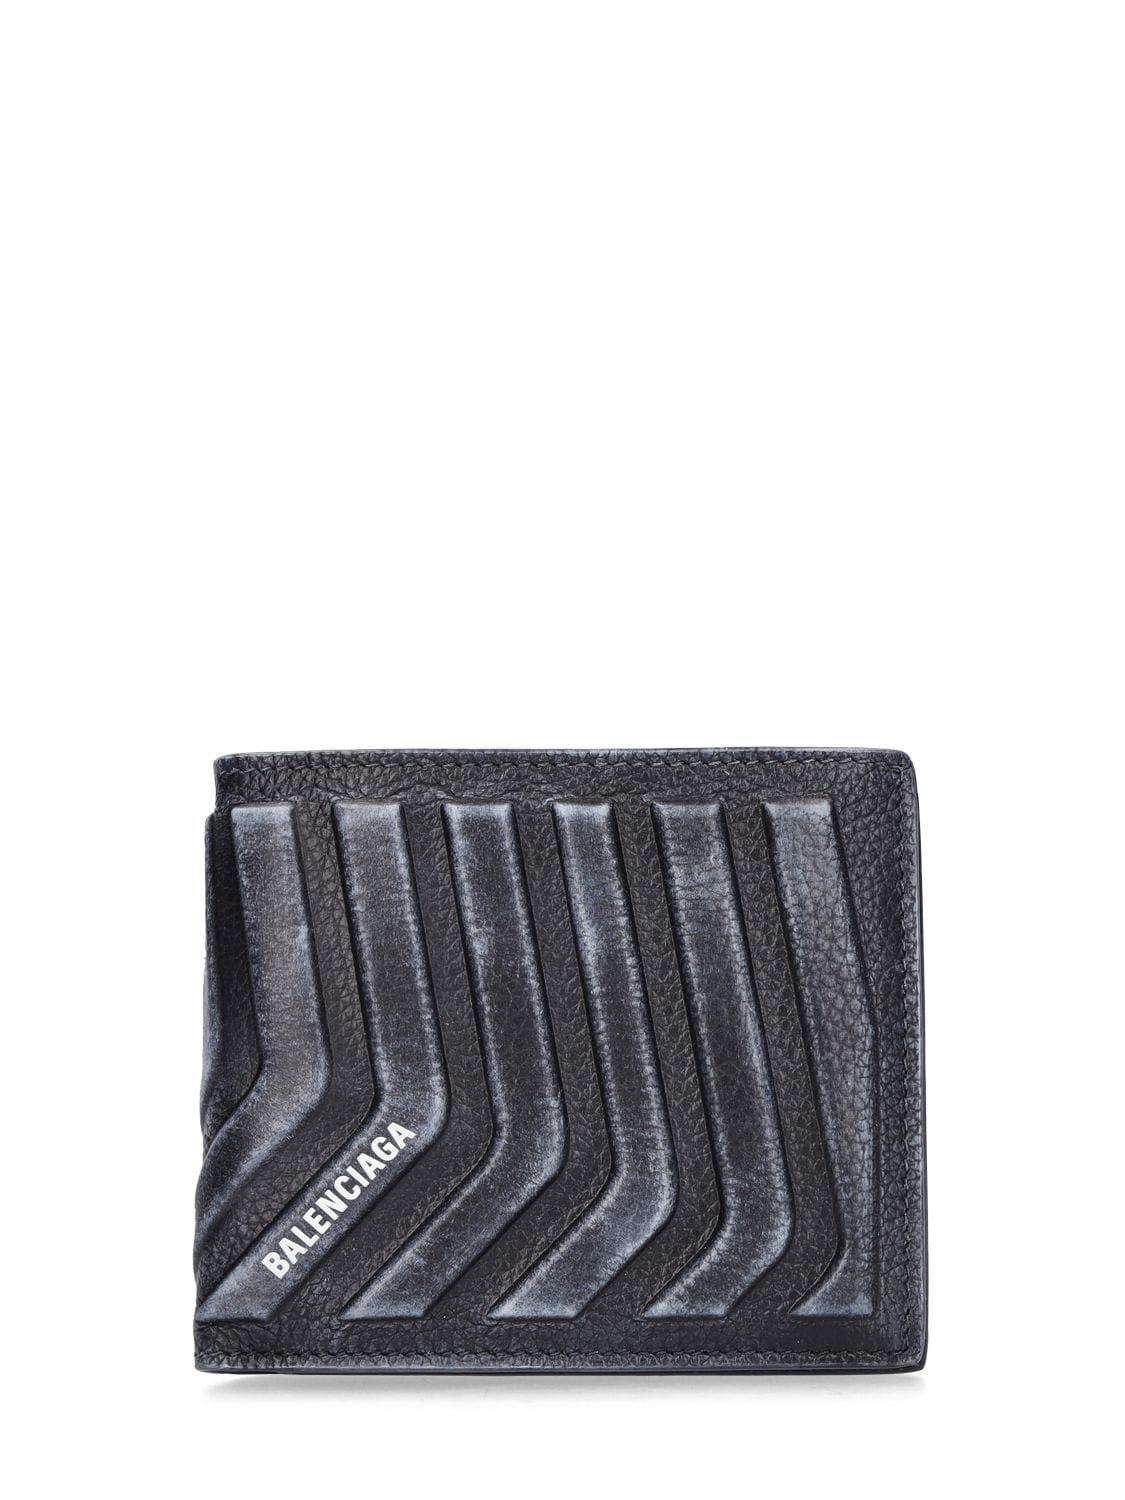 Balenciaga Leather Wallet In Black,white